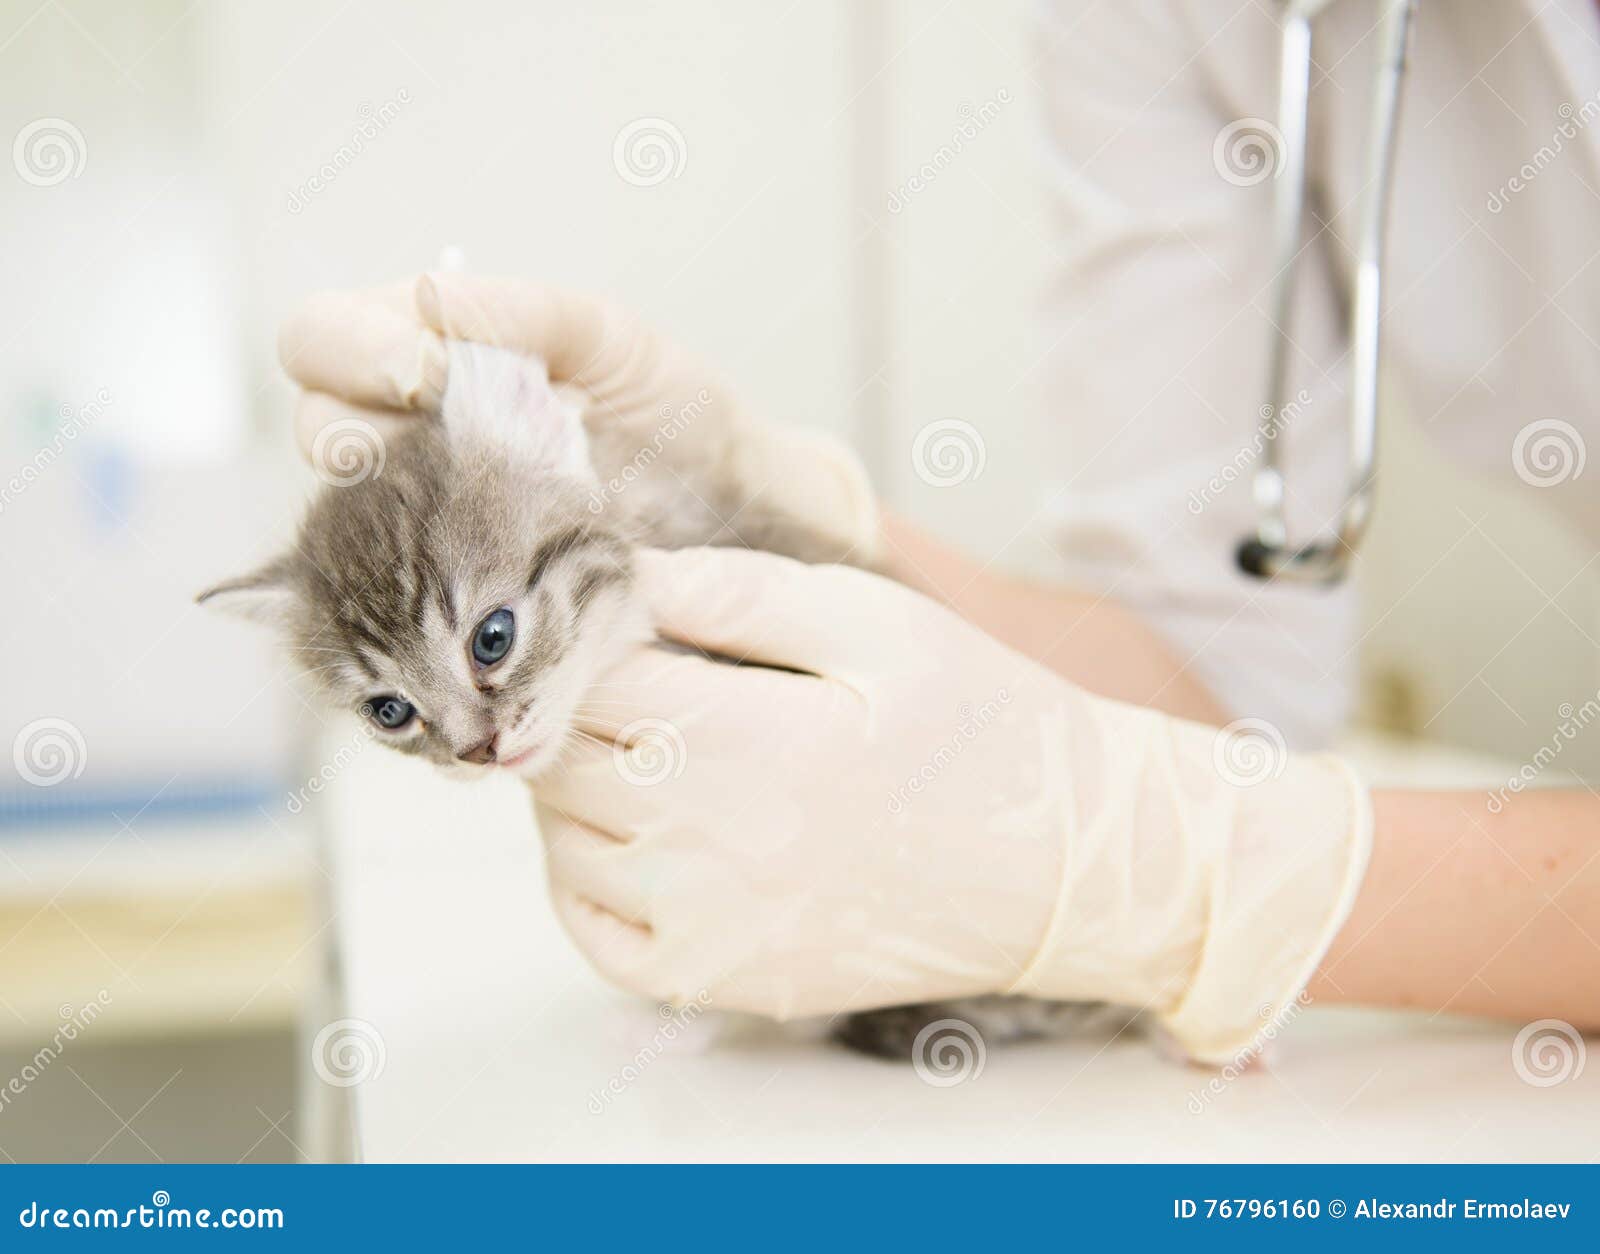 veterinarian cleans ears cat